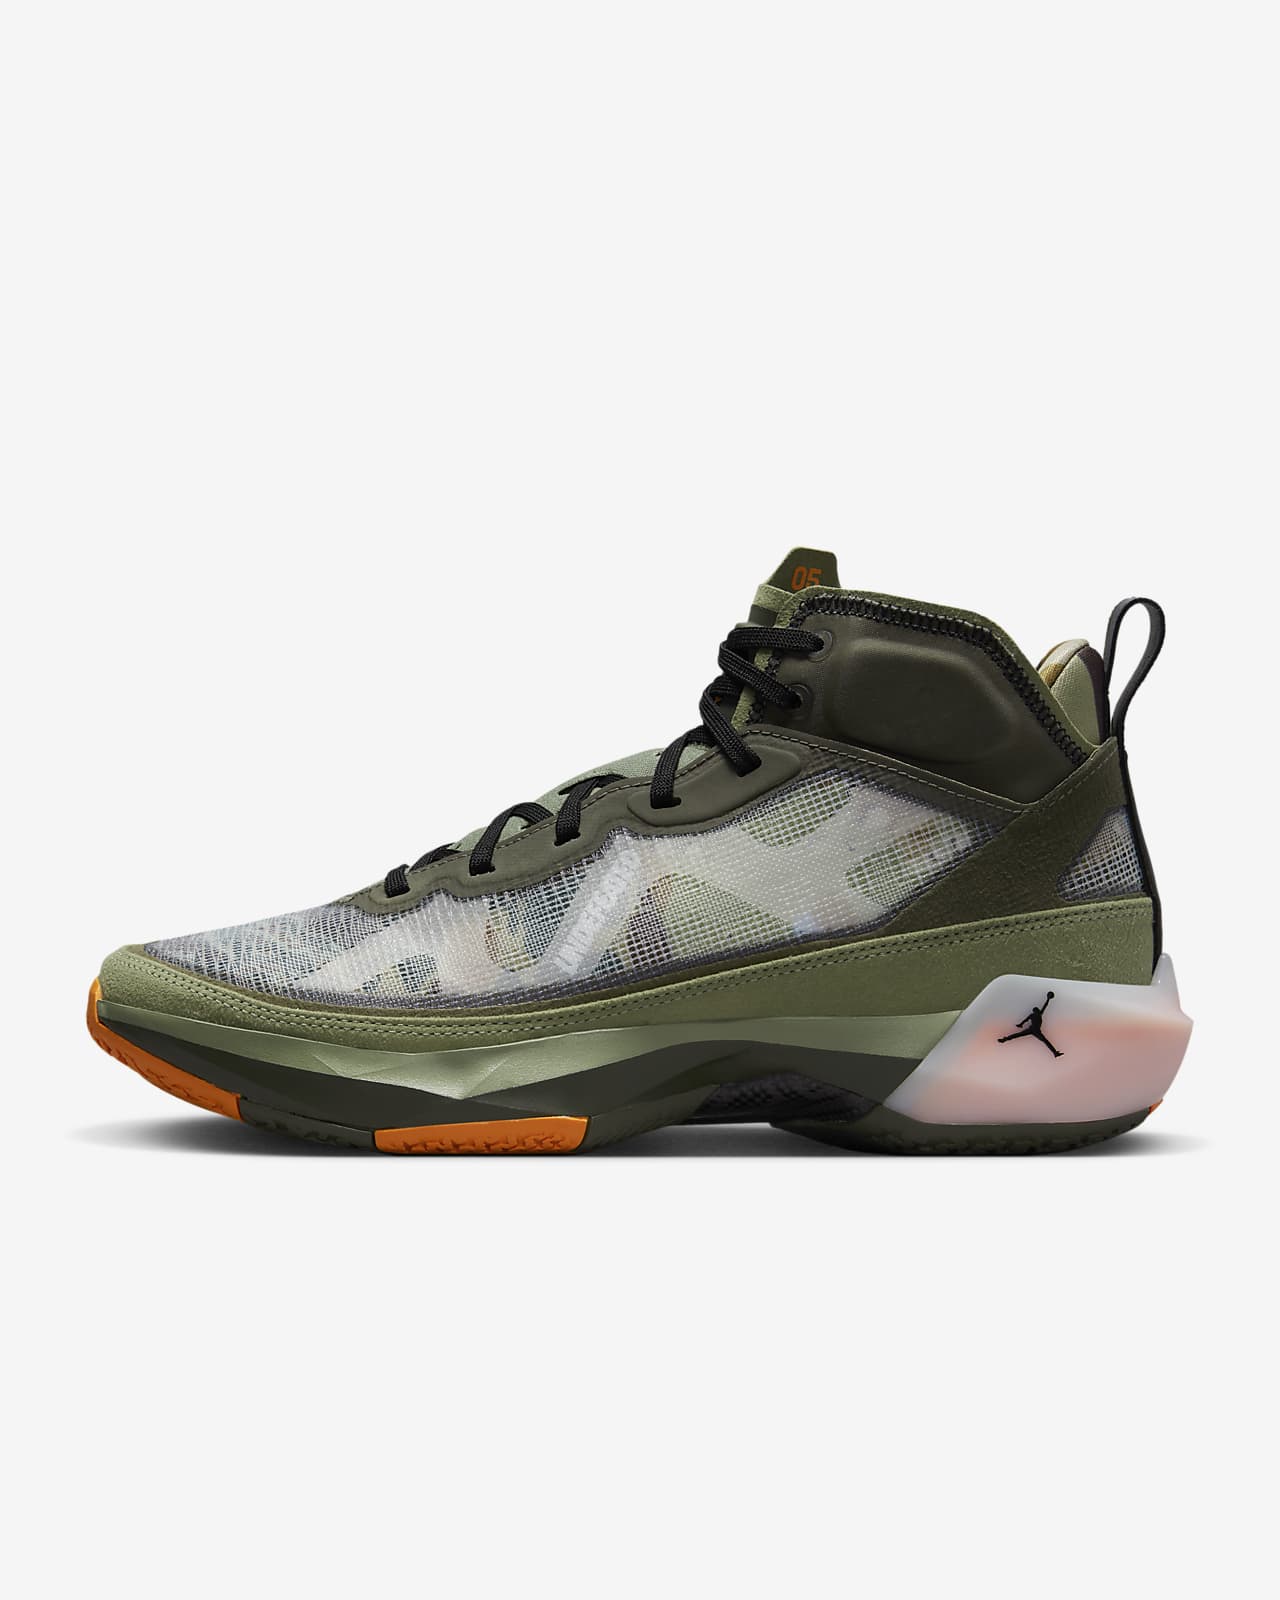 Calzado de Jordan SP. Nike.com